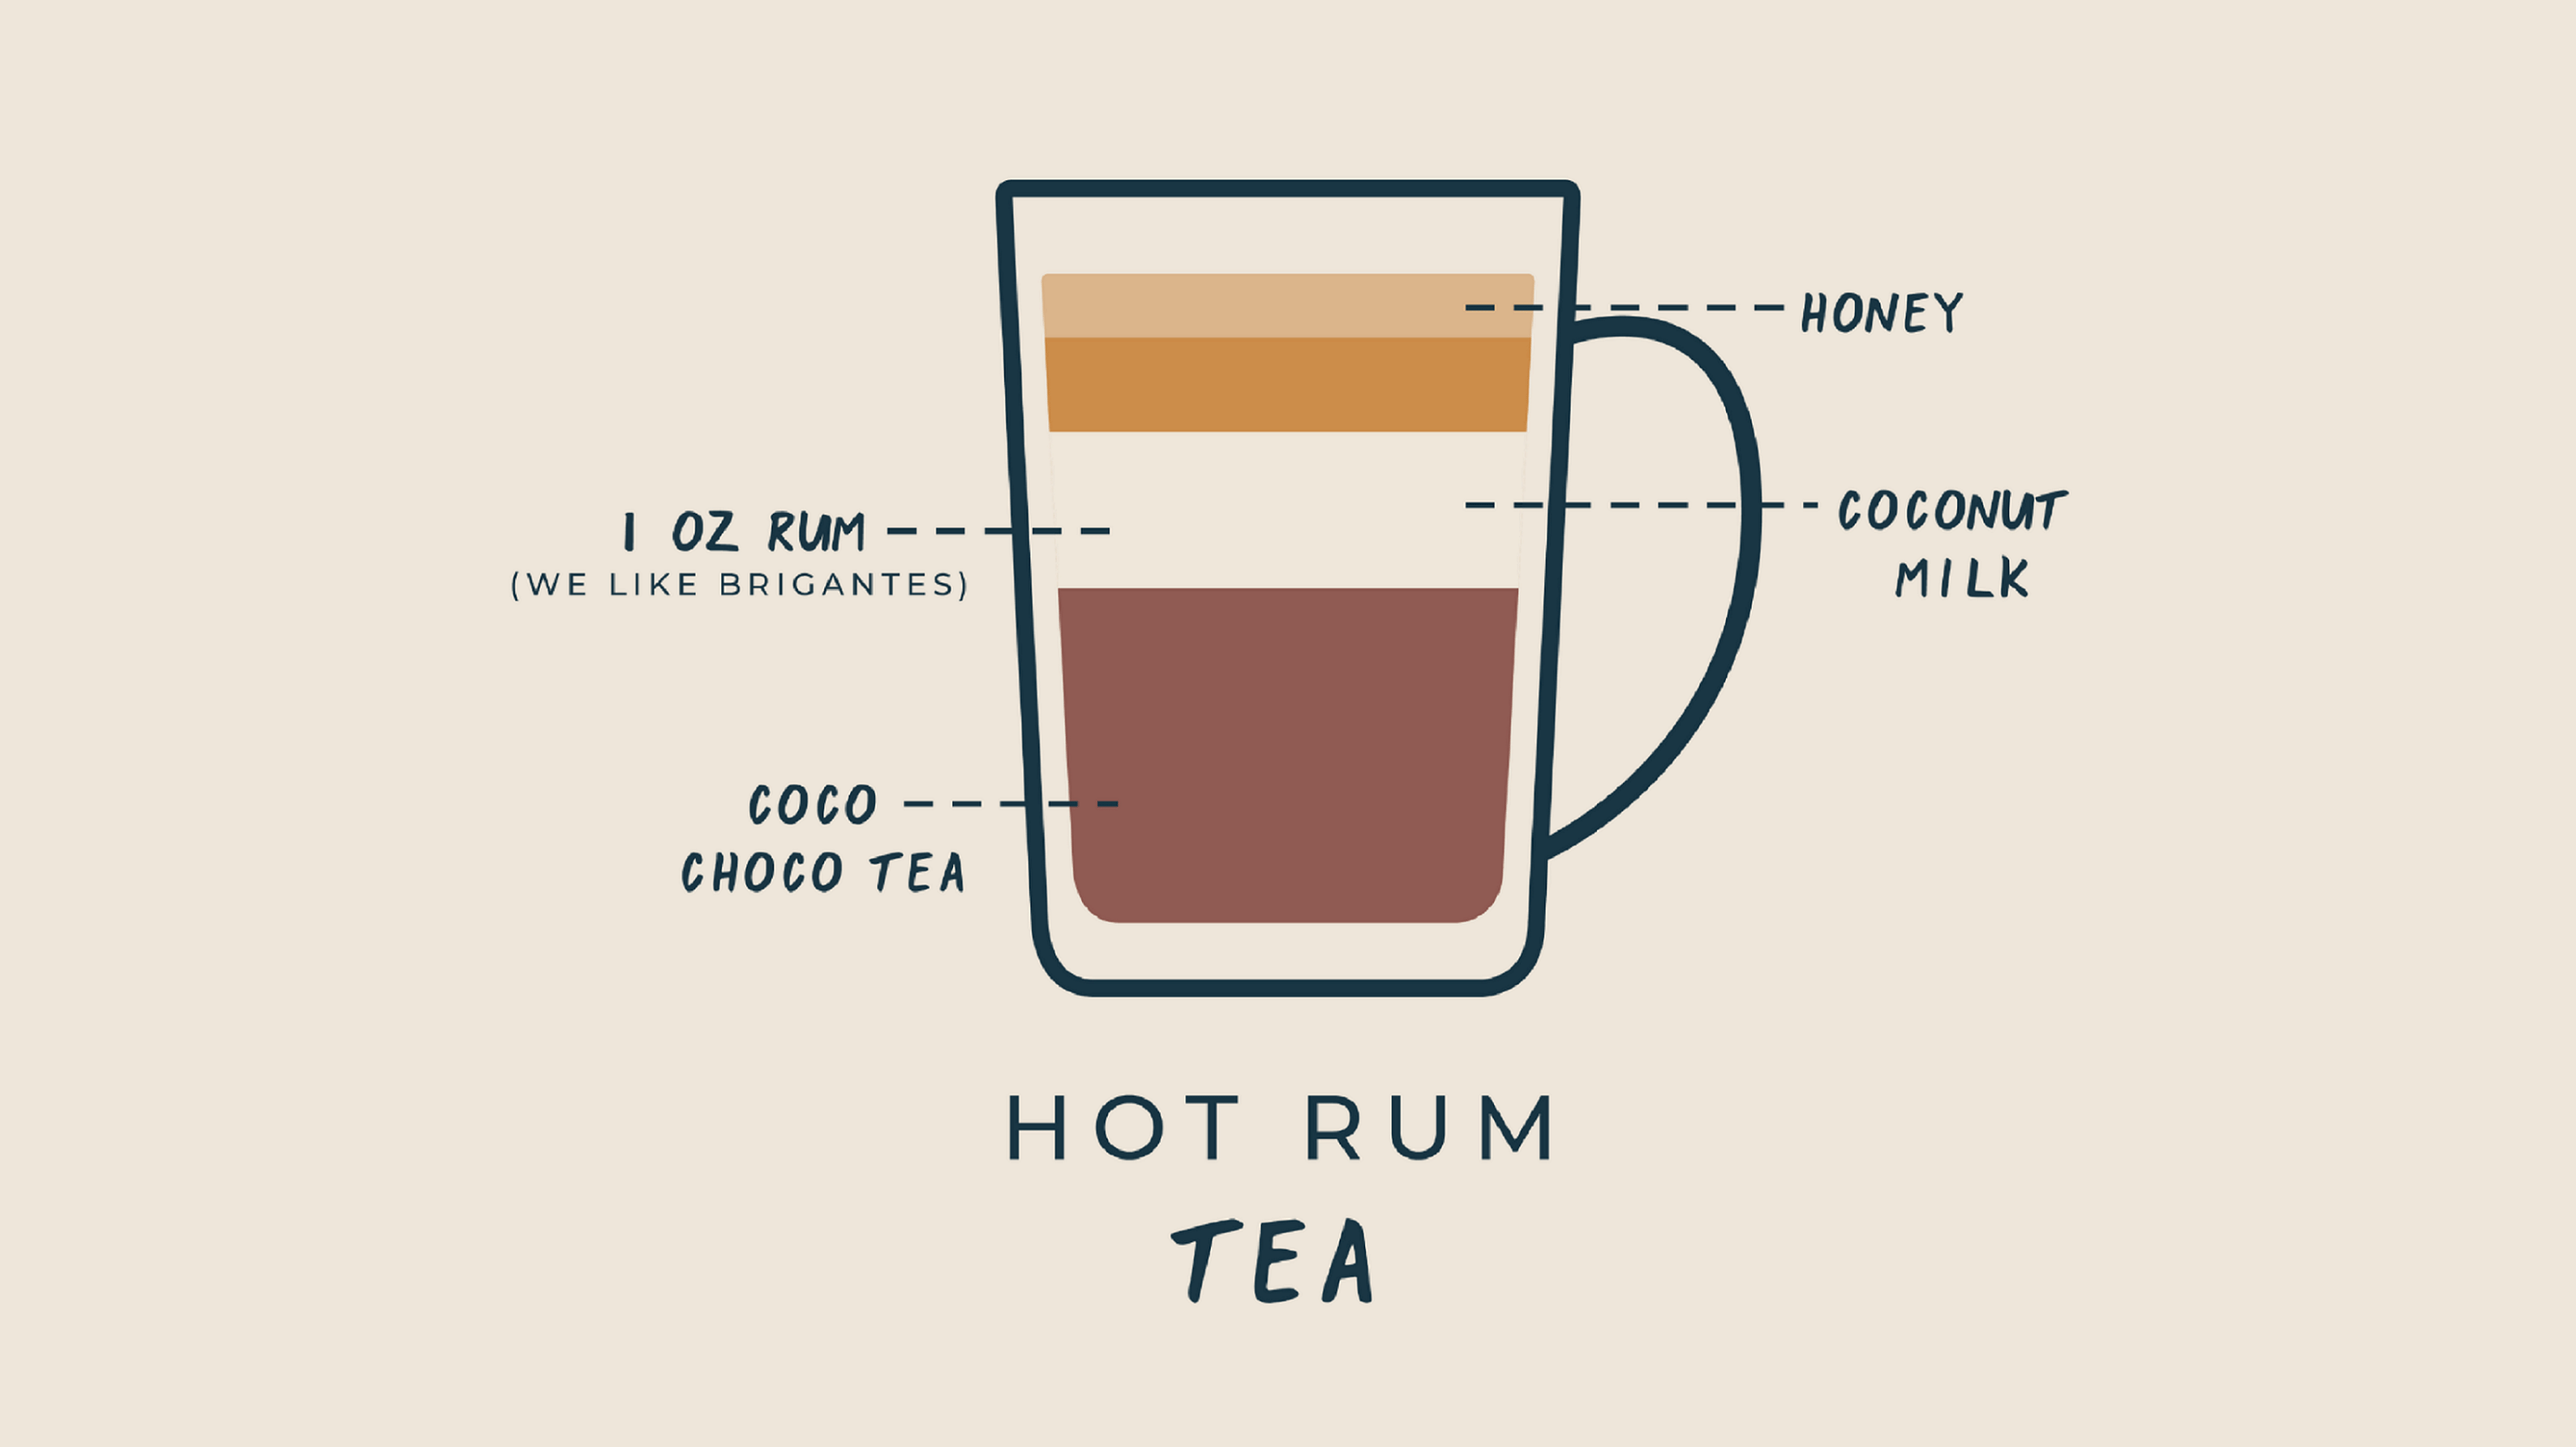 kazi-yetu-graphic-hot-rum-tea-with-coco-choco-recipe